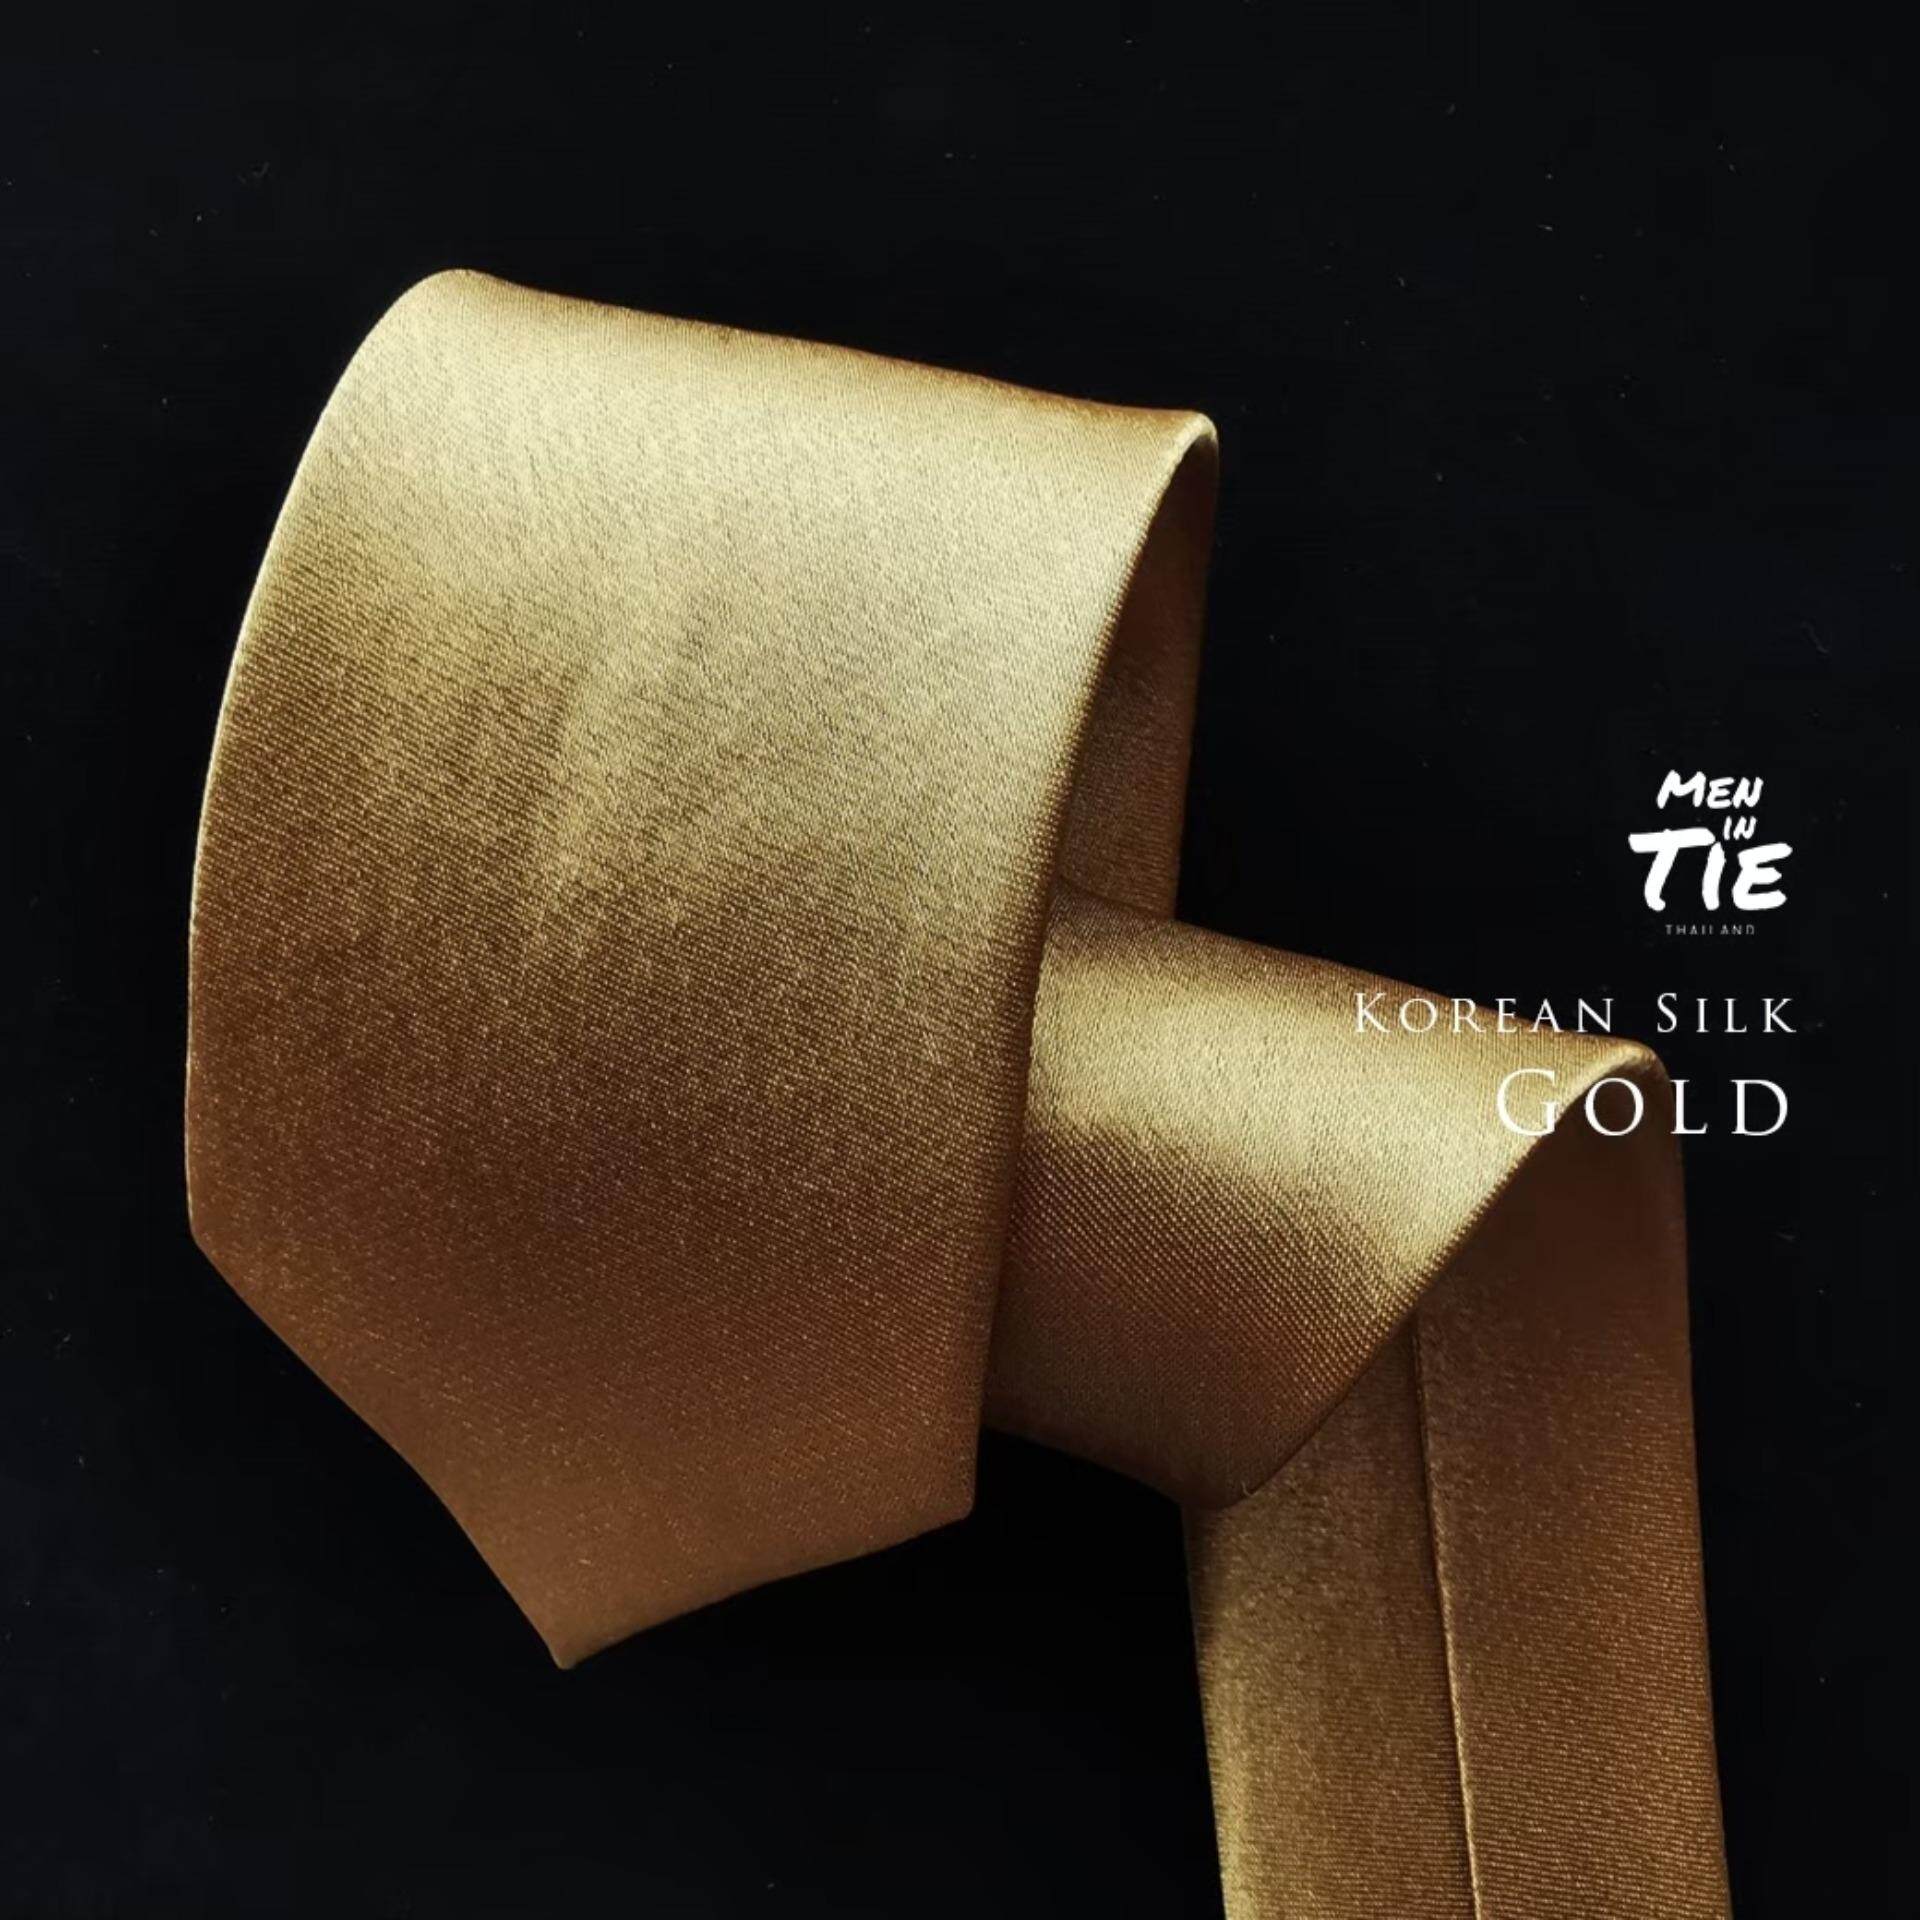 เนคไท สีทอง ผ้าไหมเกาหลี มันเงาวาว gold tie